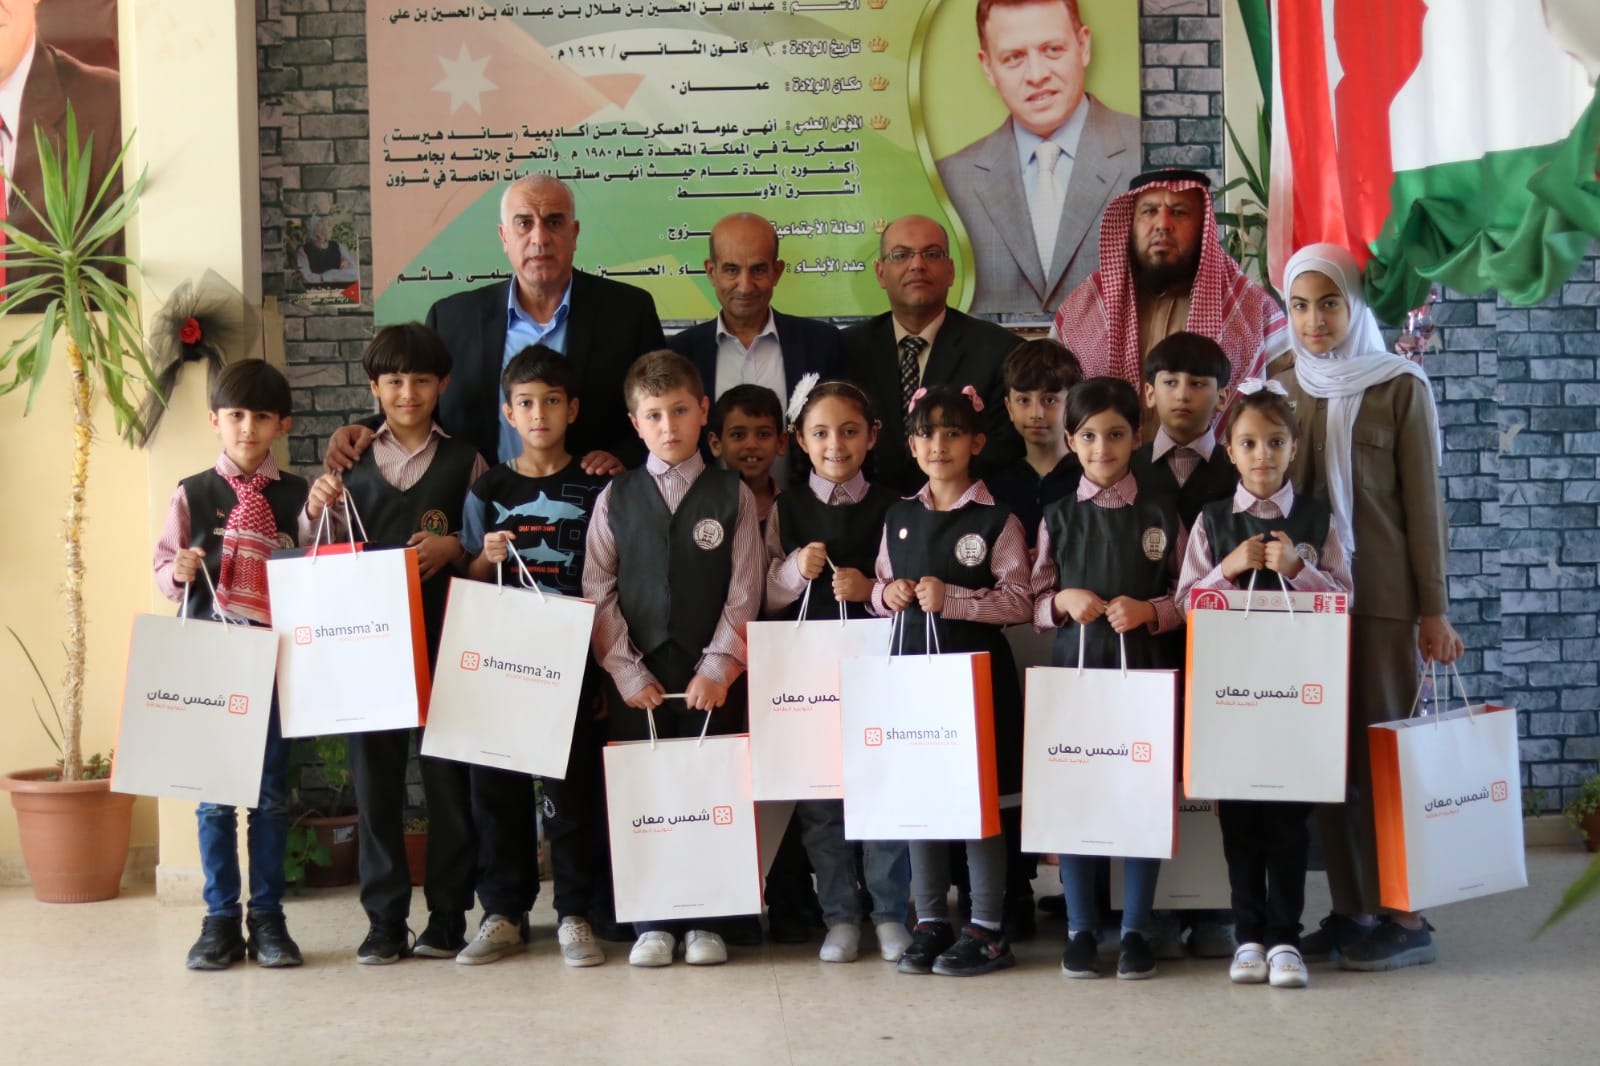  جمعية أيتام معان الخيرية تكرم طلبة مدرسة جامعة الحسين بن طلال الفائزين في مسابقة حفظ القرآن الكريم  والواعدين.